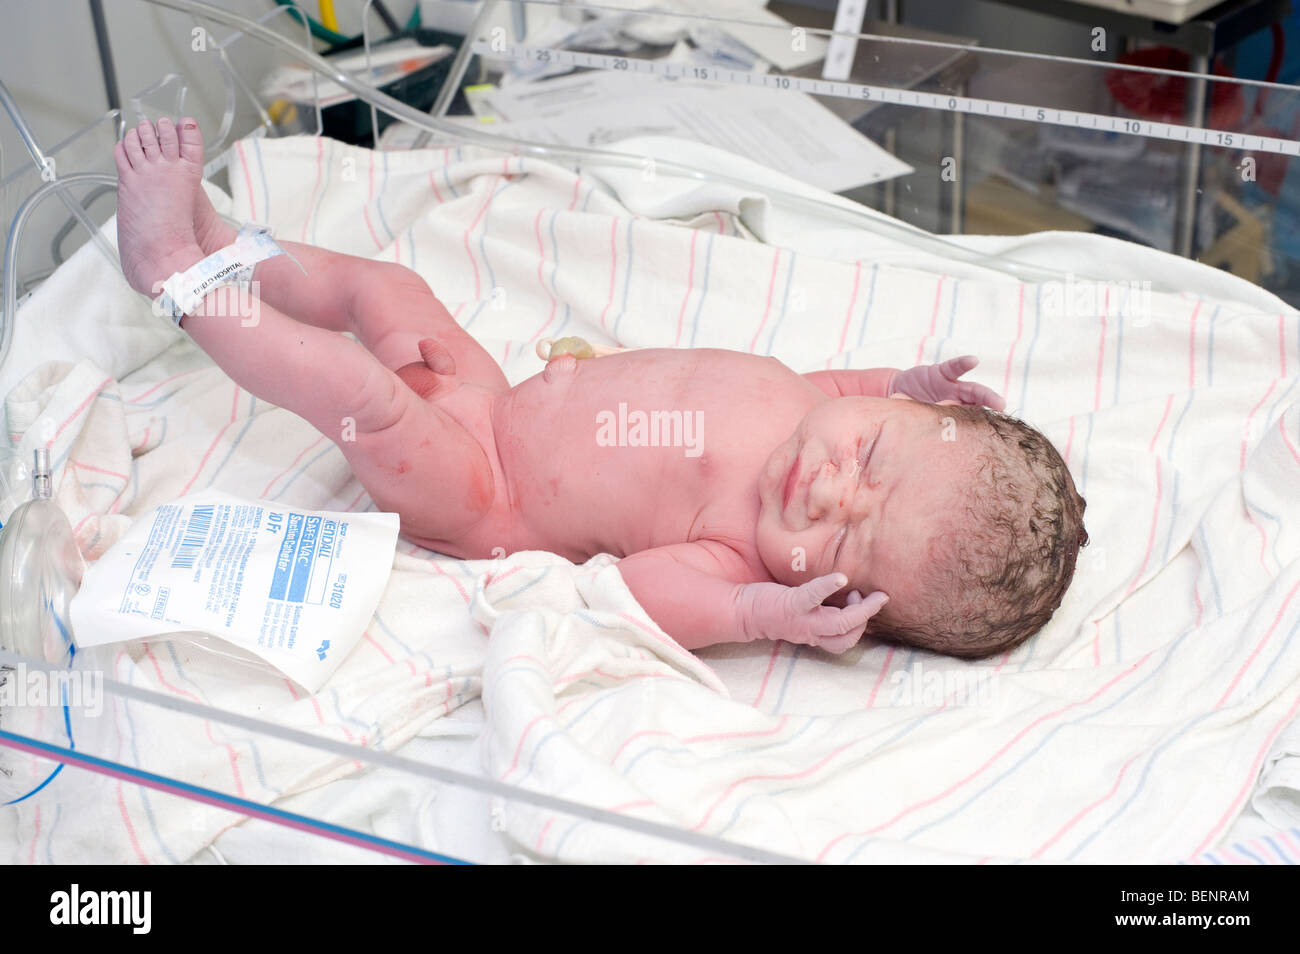 Boy nouveau-né immédiatement après la livraison par ceserean (c-section). Modèle bébé est libéré. Banque D'Images